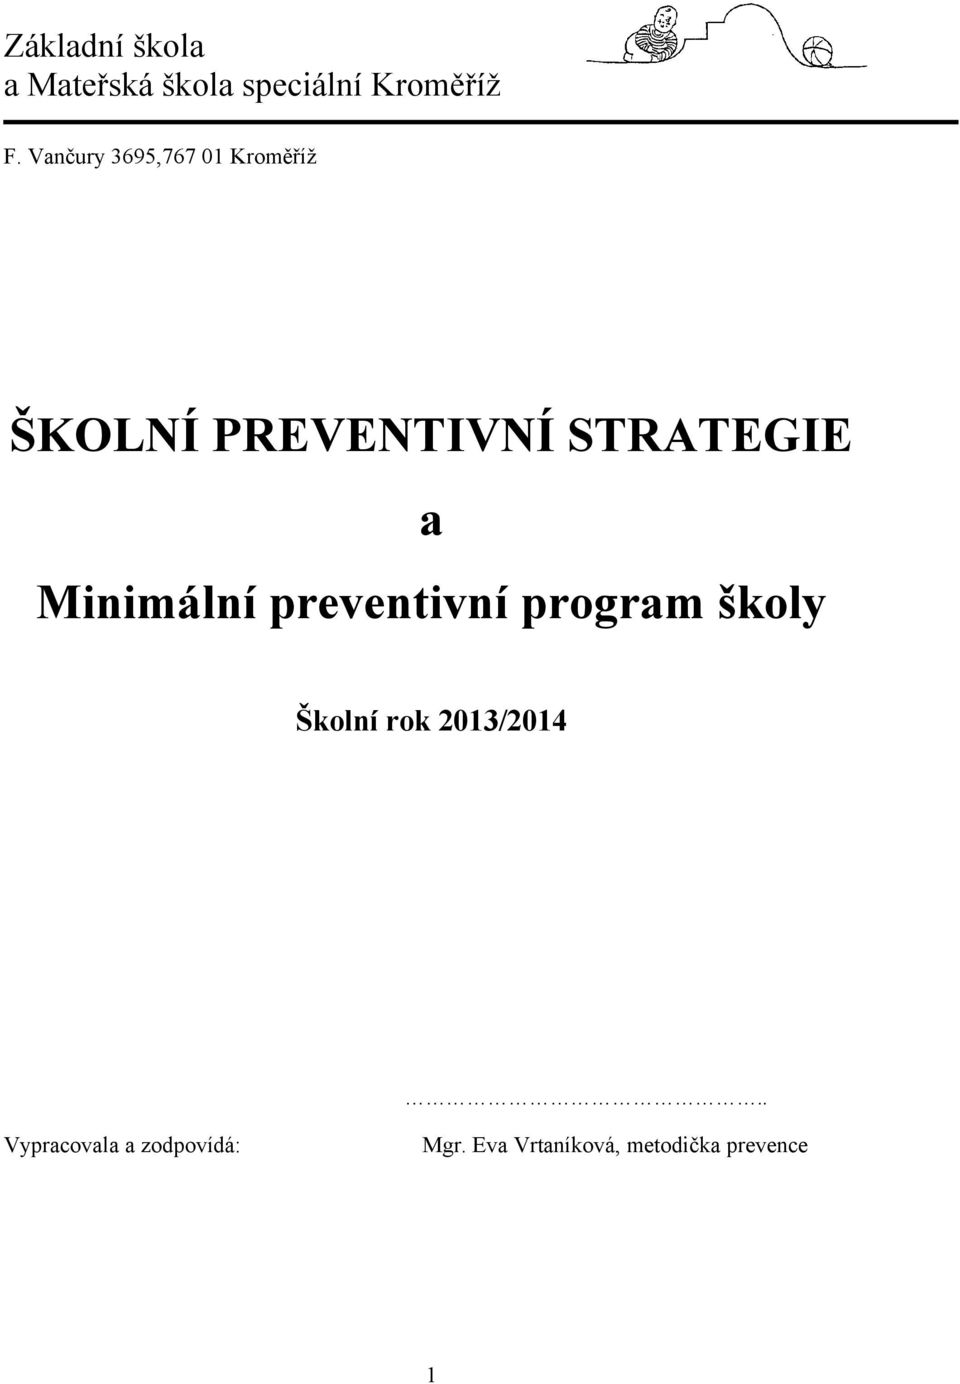 Minimální preventivní program školy Školní rok 2013/2014.